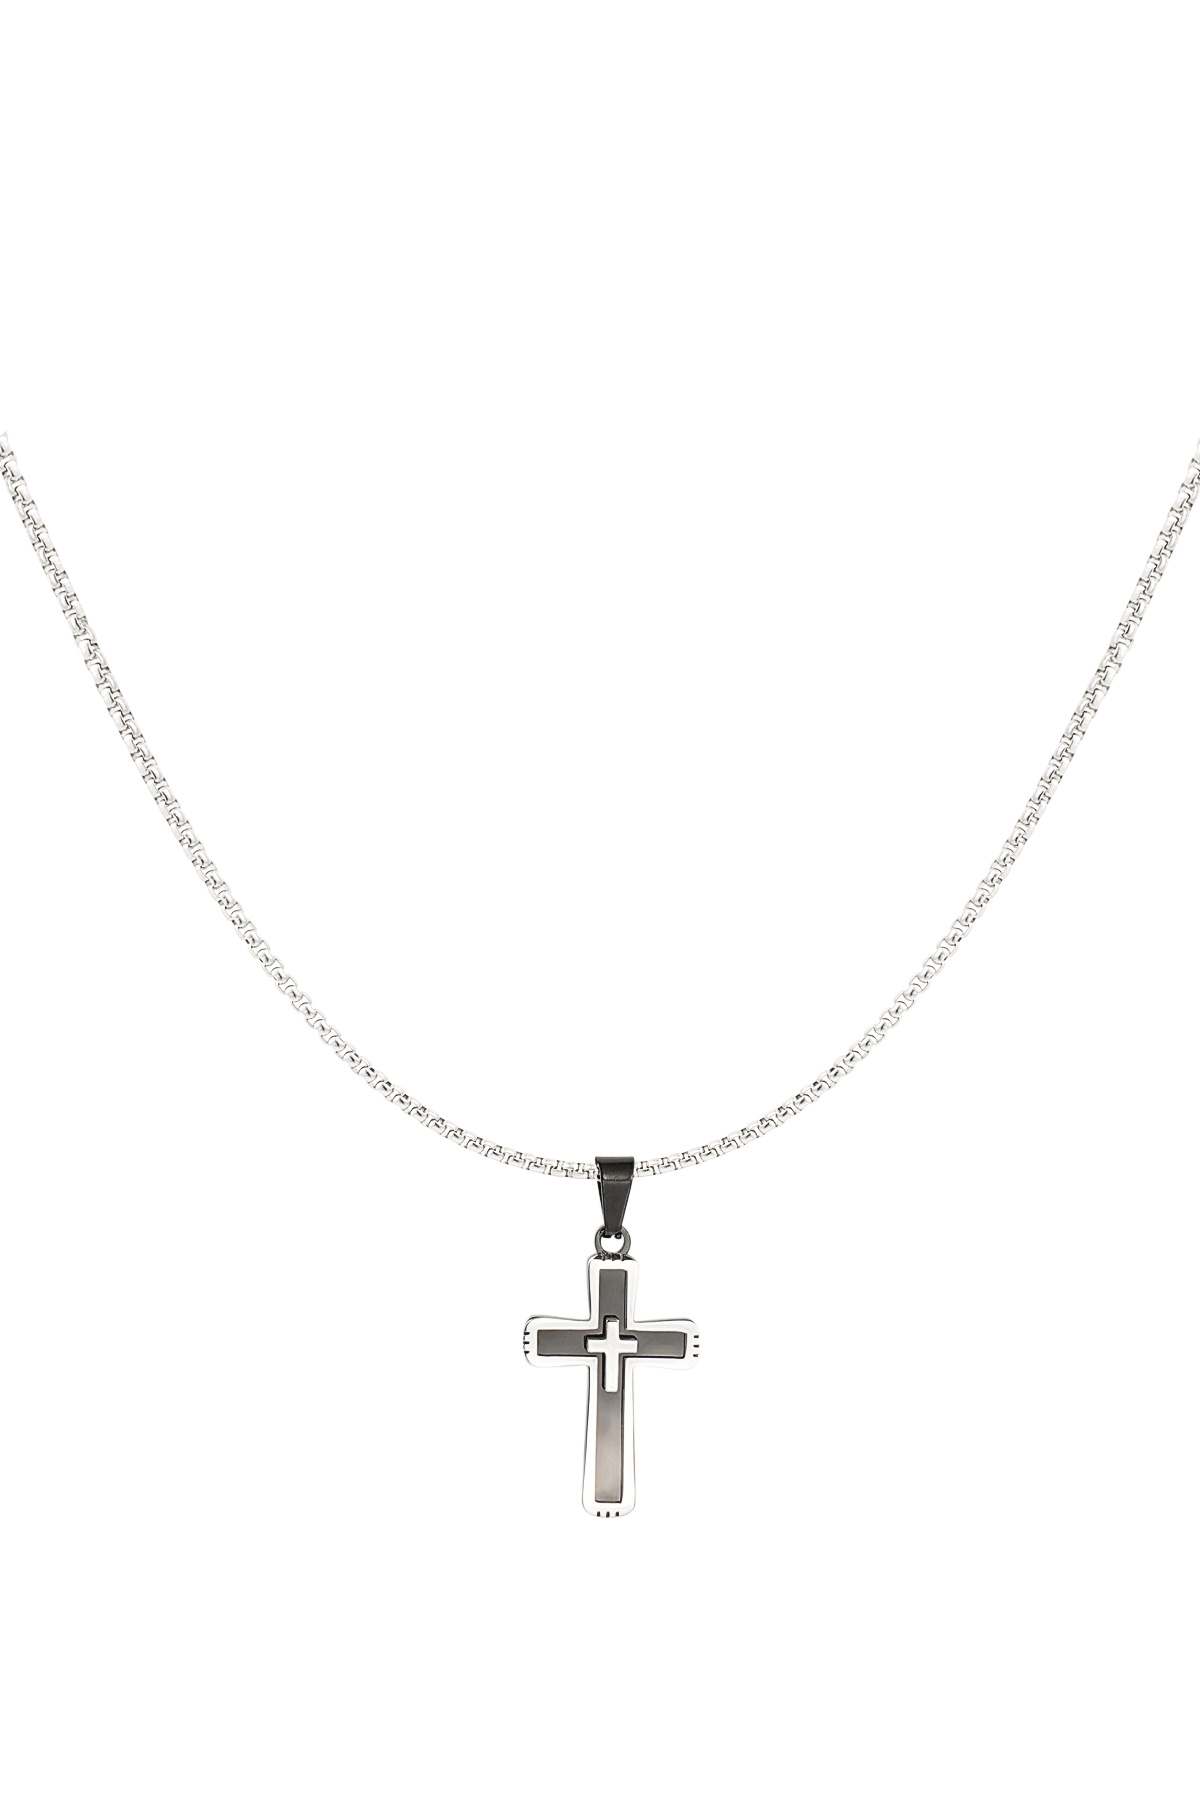 Herrenhalskette Kreuz mit schwarzen Details – Silber/Schwarz